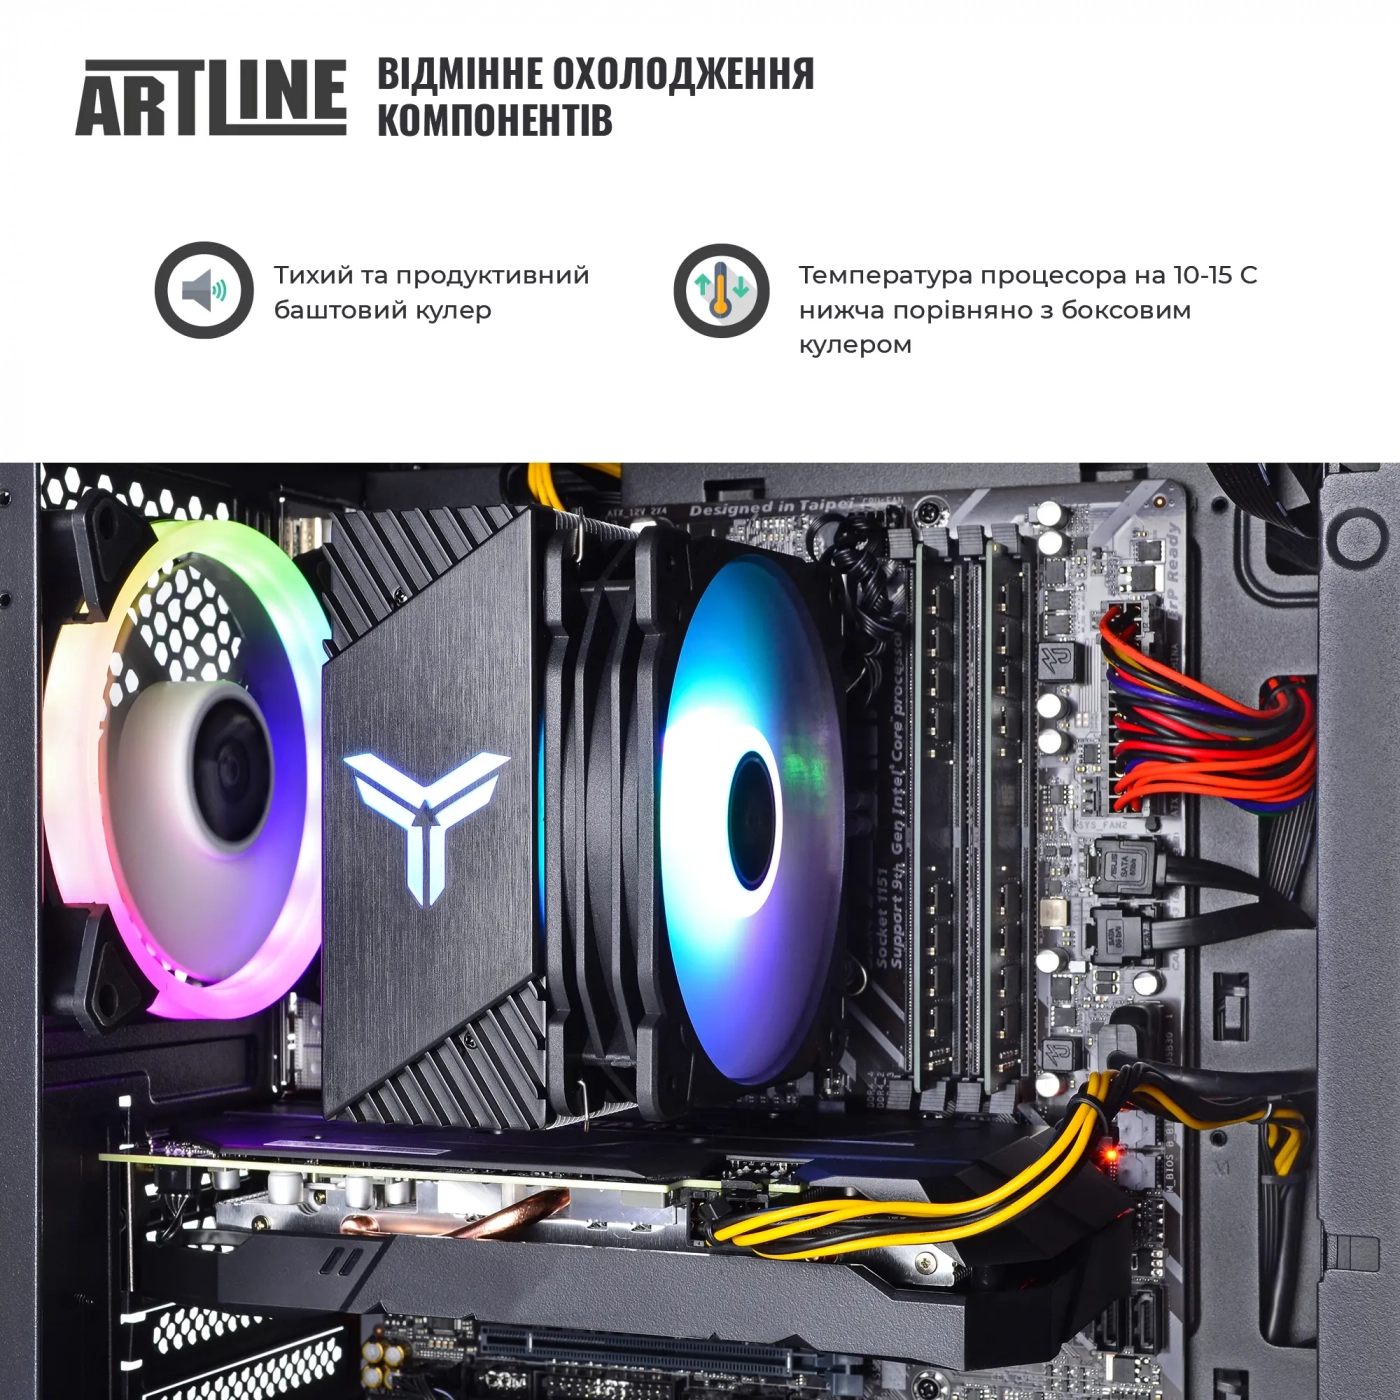 Купить Компьютер ARTLINE Gaming X63v25 - фото 3